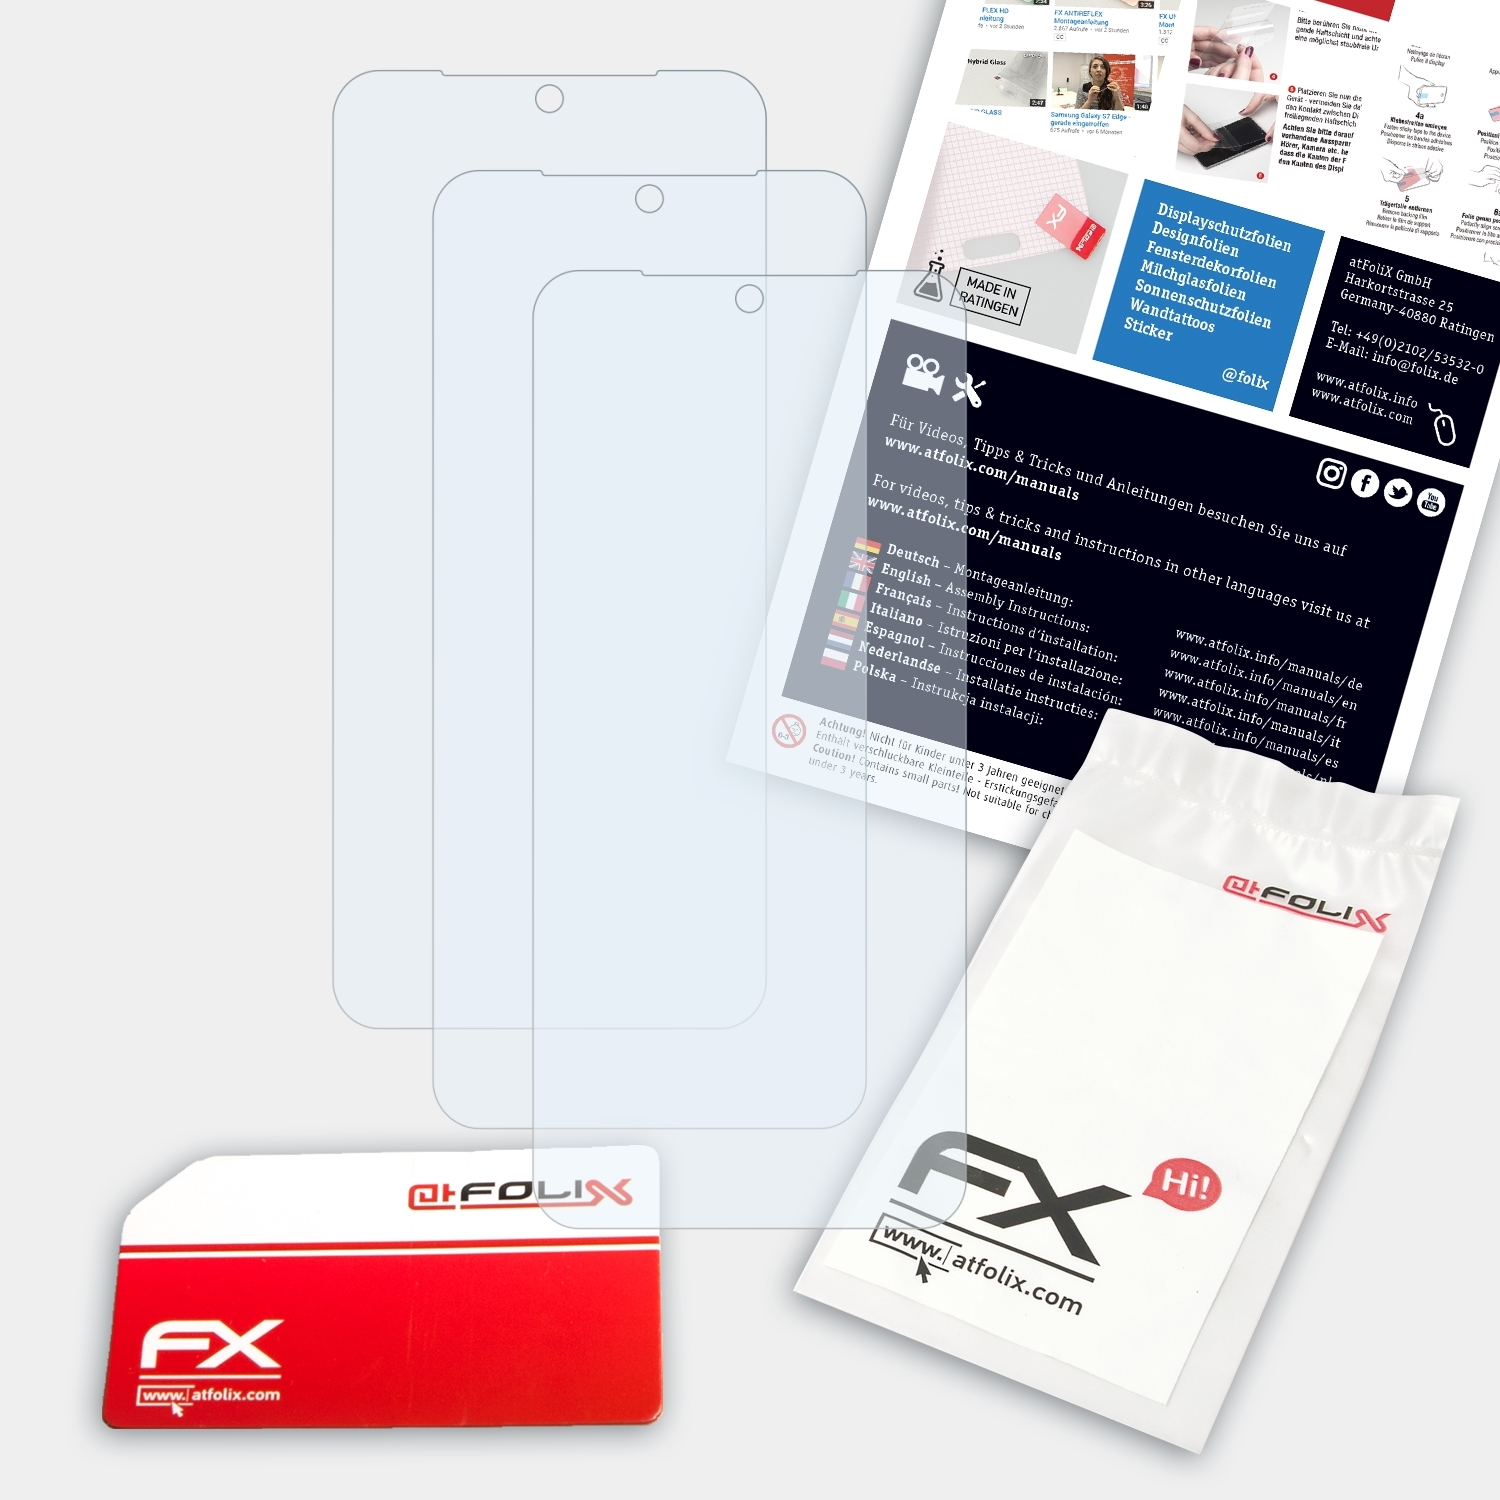 ATFOLIX 3x Vivo Displayschutz(für FX-Clear V21)